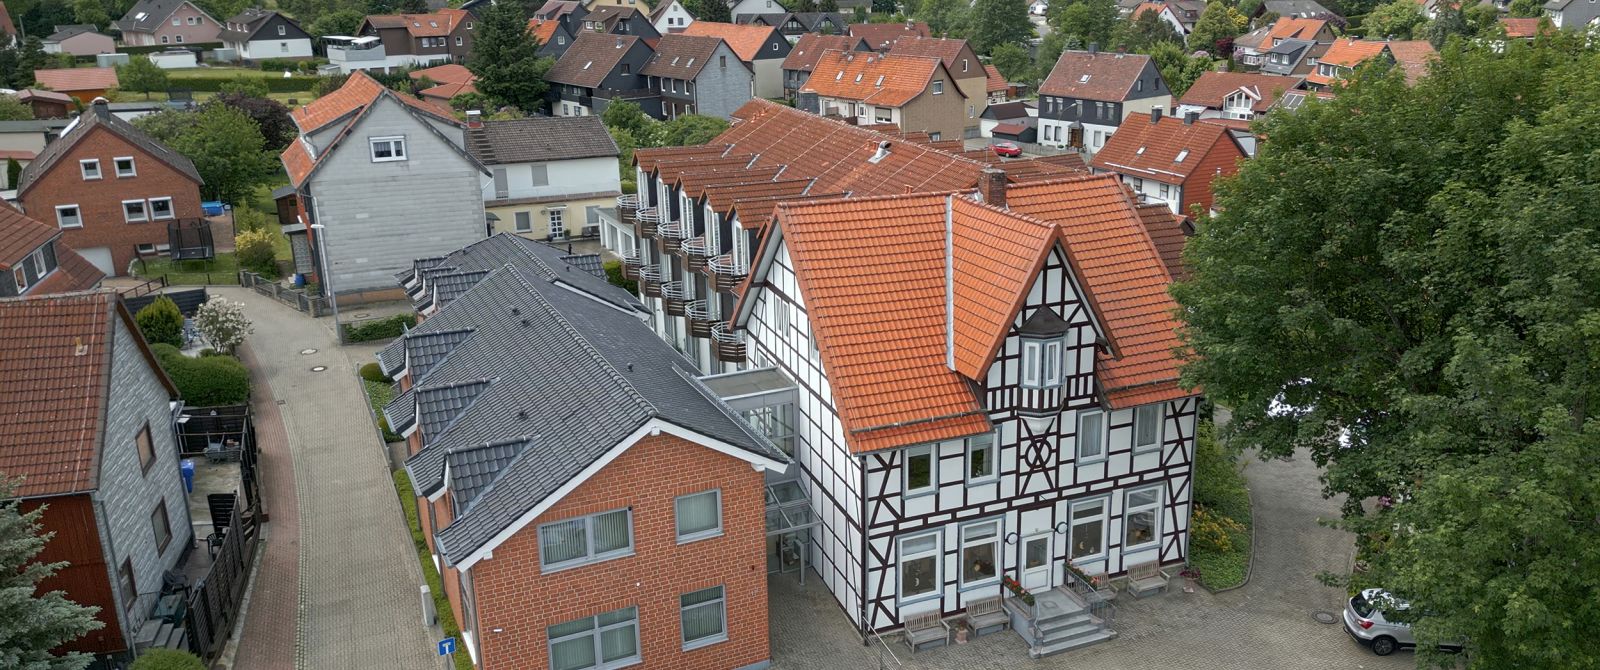 Pflegezentrum Langelsheim, Großraum Goslar